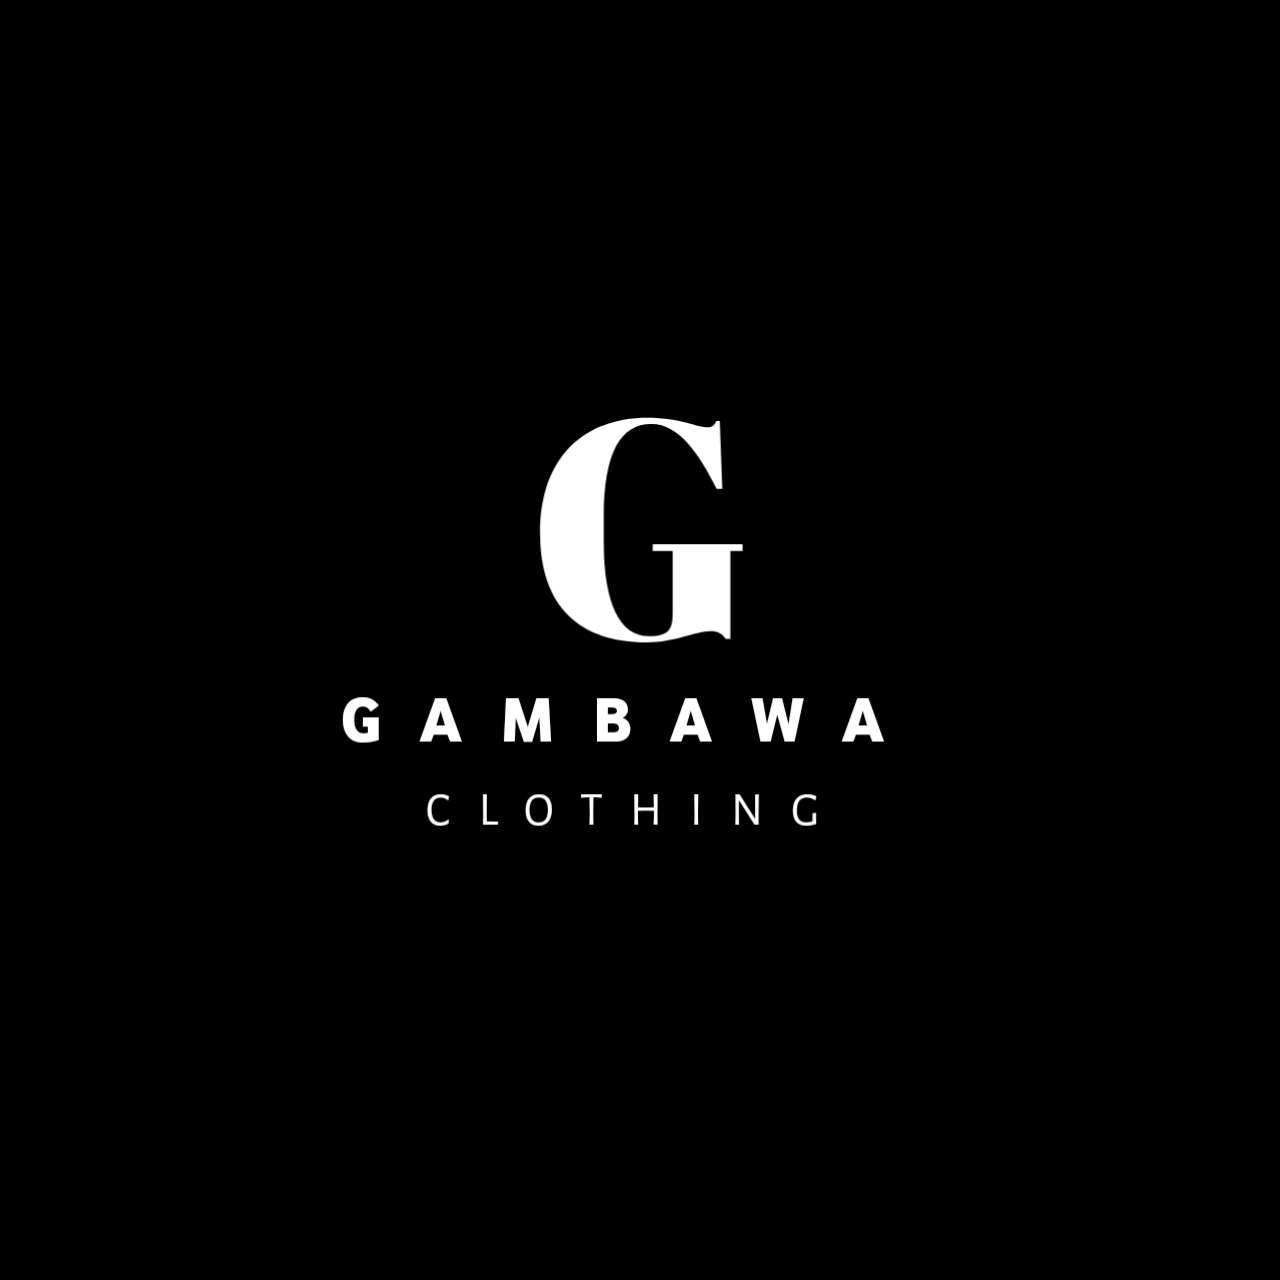 GAMBAWA CLOTHING